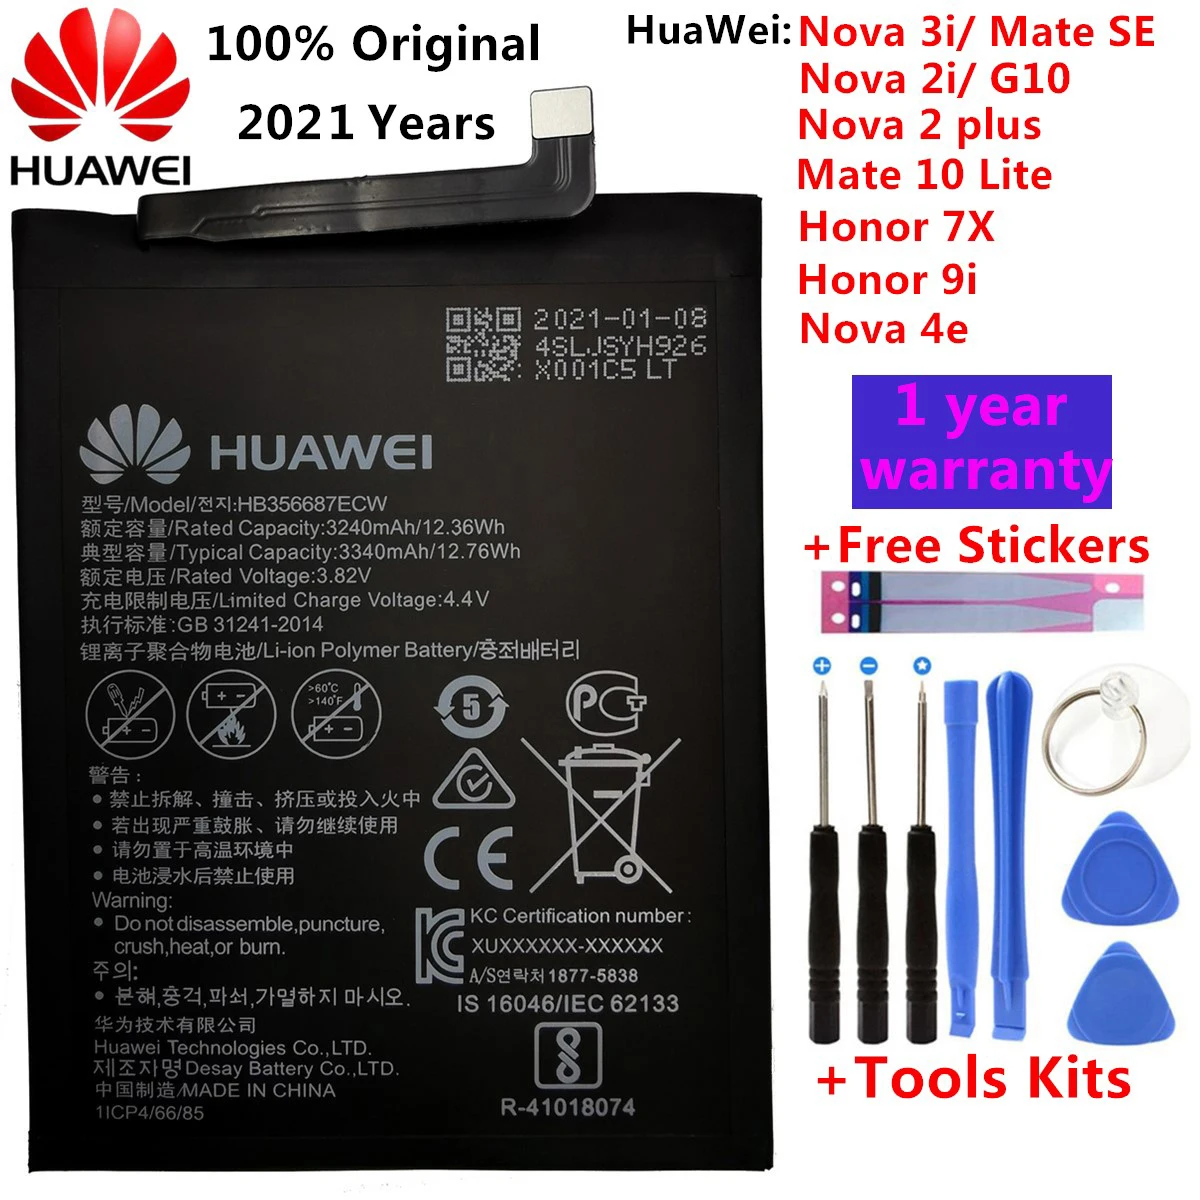 

Батареи и инструменты HB356687ECW для Huawei Nova 2 plus/Nova 2i/ G10/Mate 10 Lite/ Honor 7x/Honor 9i, 3340 мАч